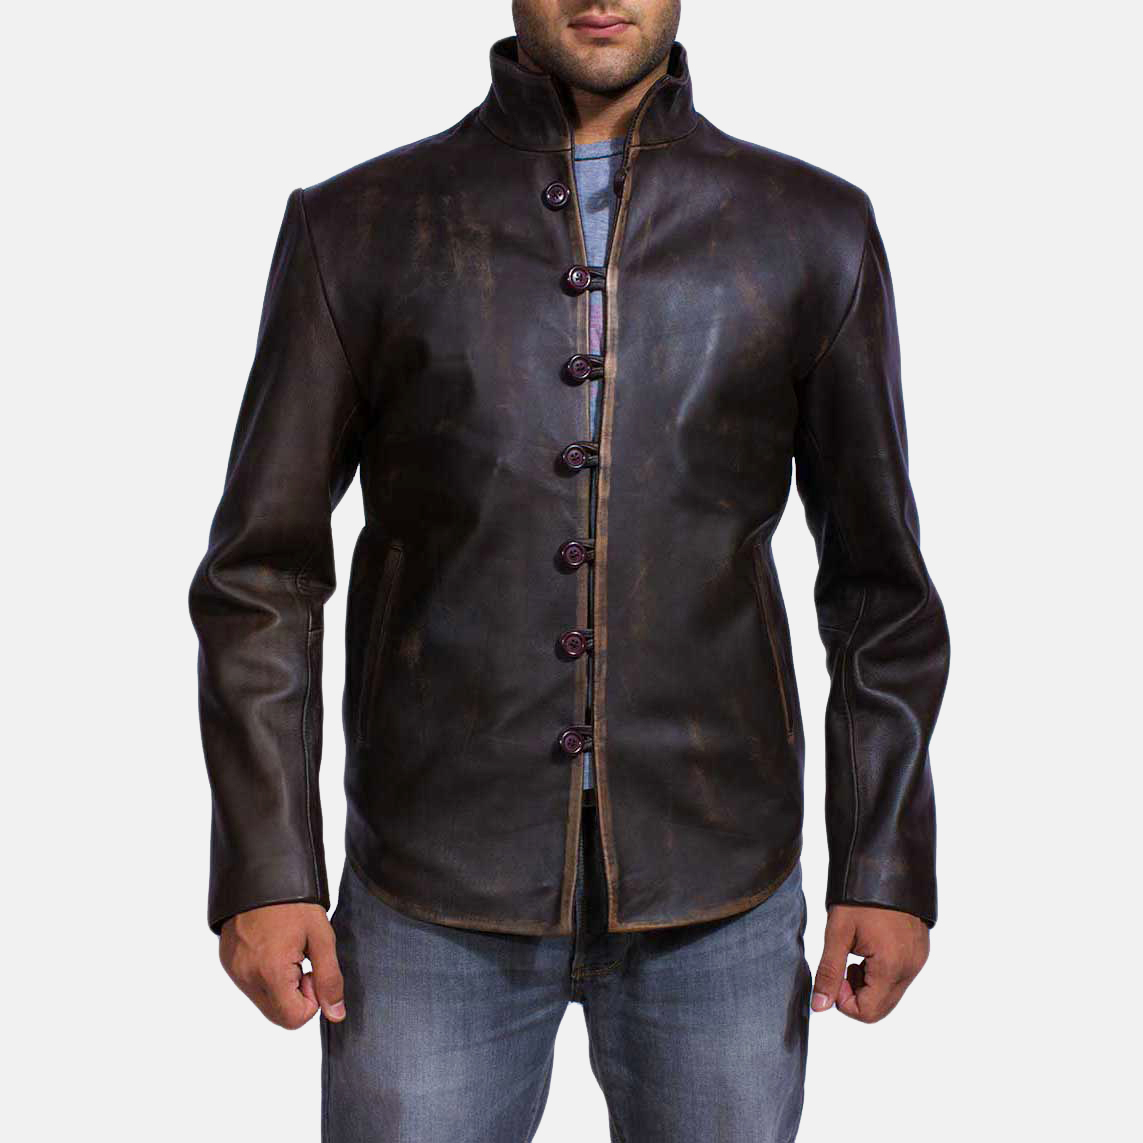 Best Vintage-Inspired Leather Jacket